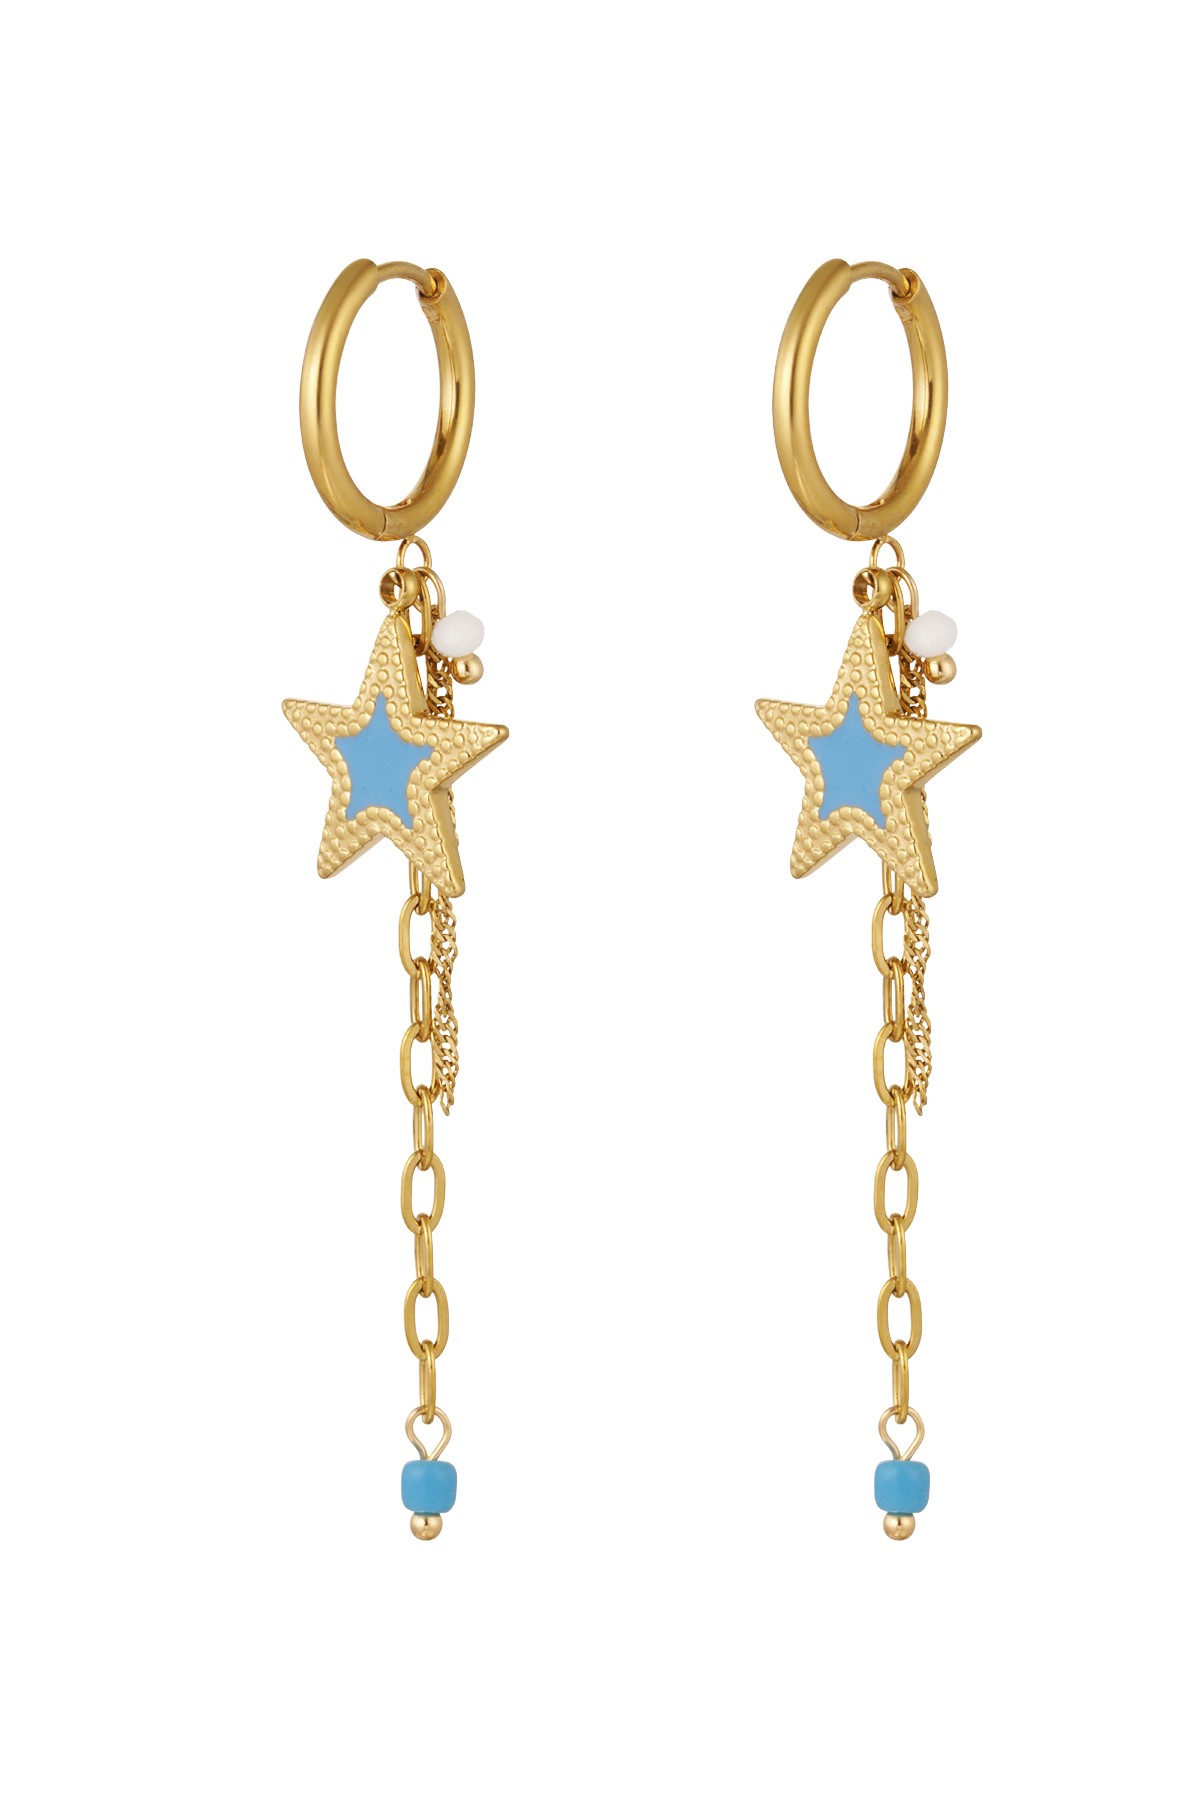 Pendientes con cadena y estrella azul - oro 